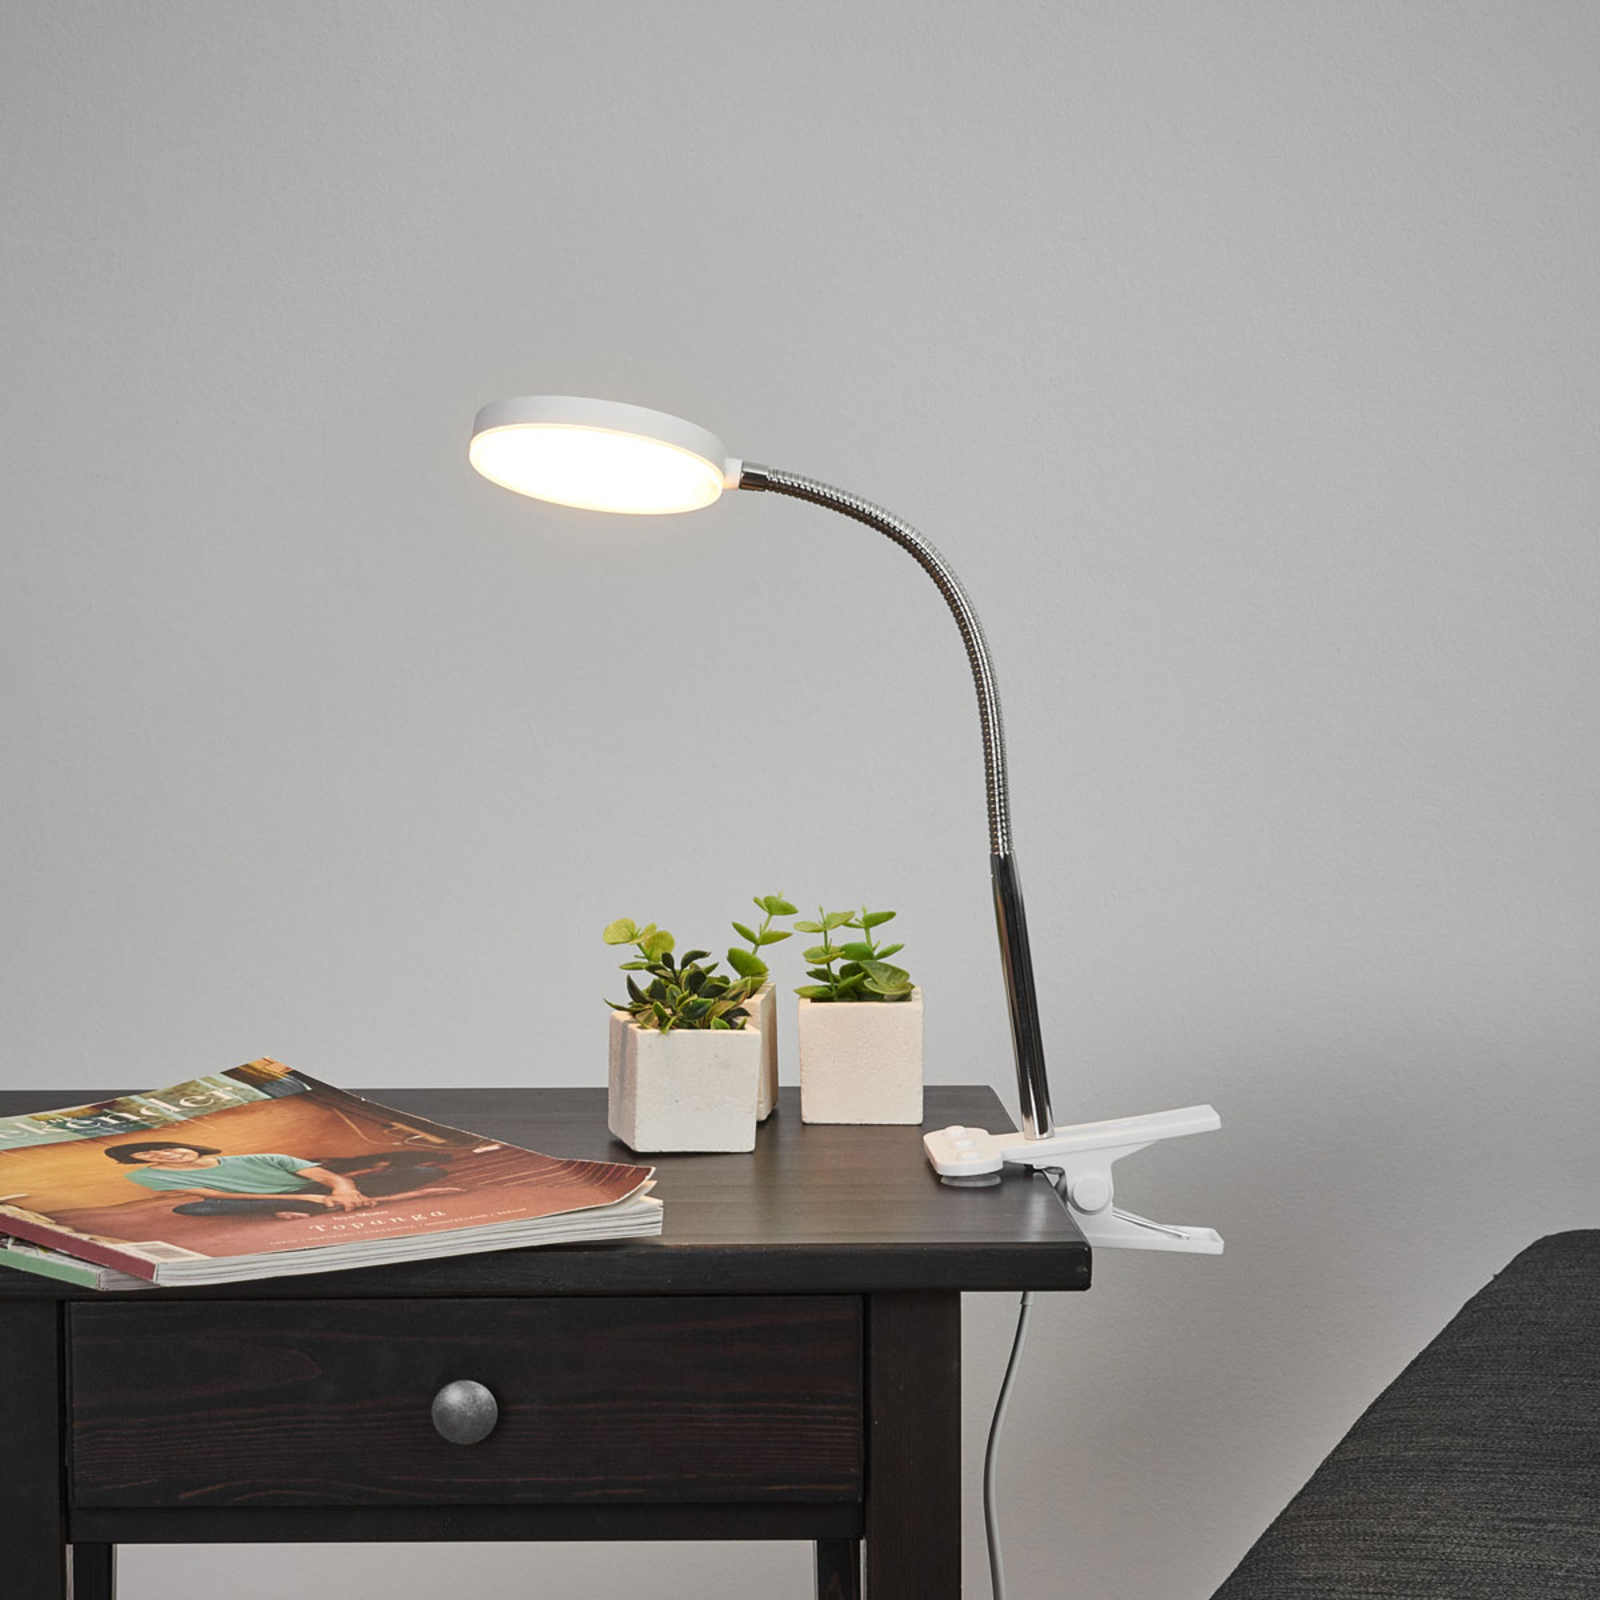 Lindby LED-es csíptethető asztali lámpa Milow, fehér, fém, 36 cm magas